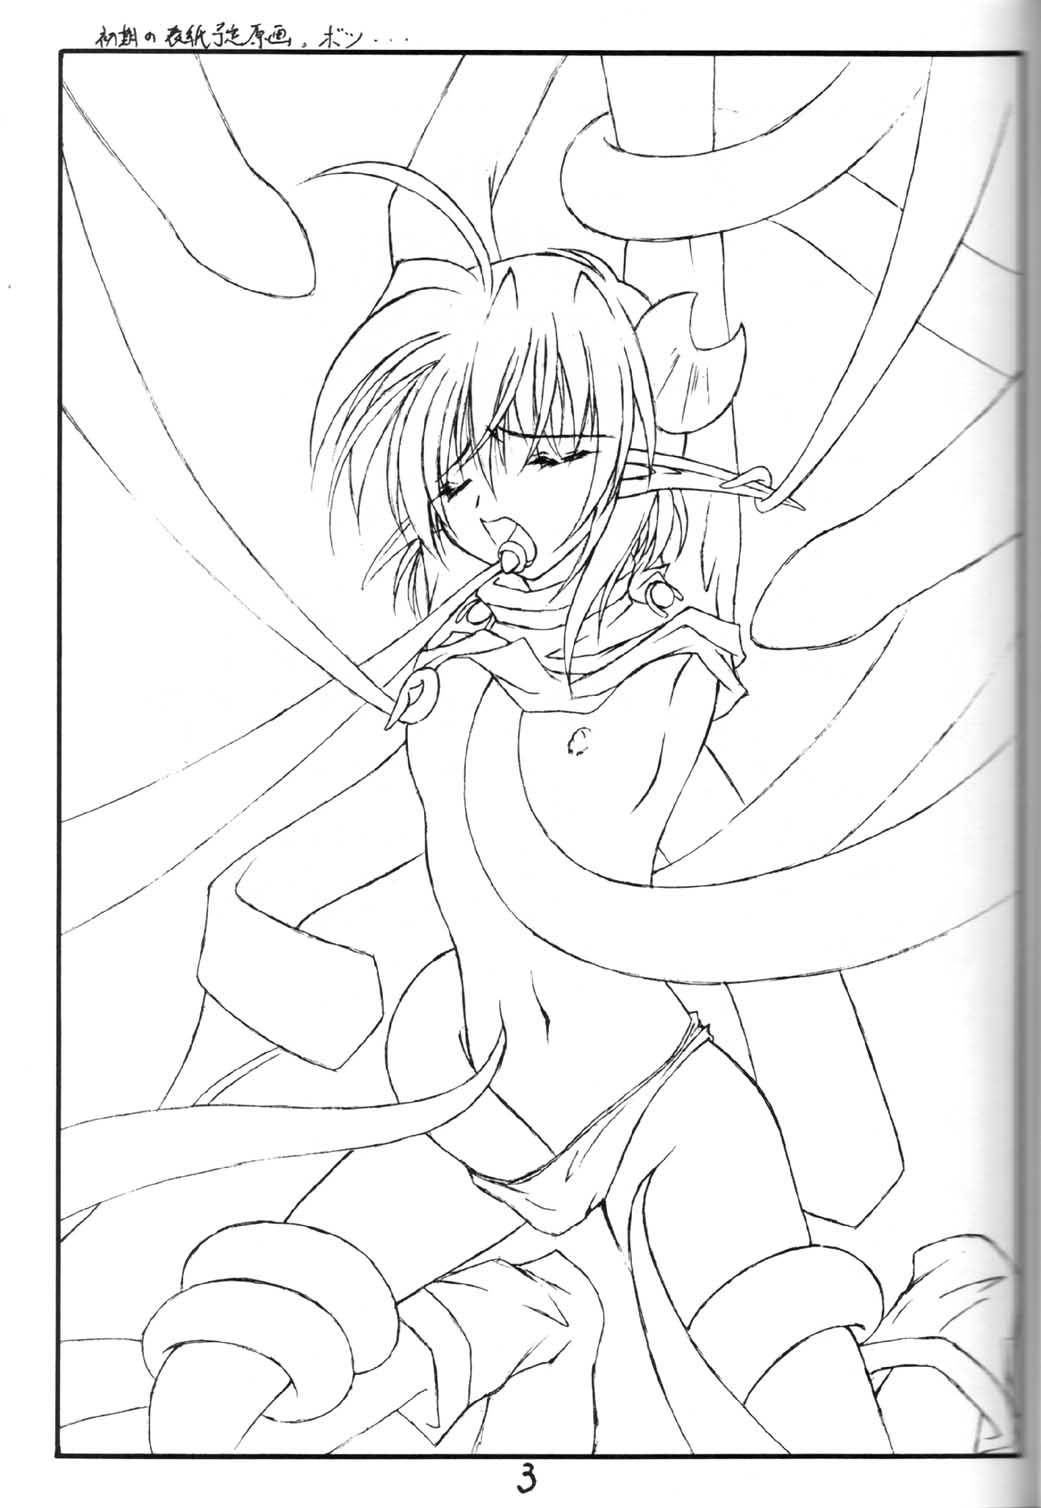 Girl Fuck Elf's Ear Book 7 - Kamigami no Tasogare - Star ocean 2 Online - Page 2